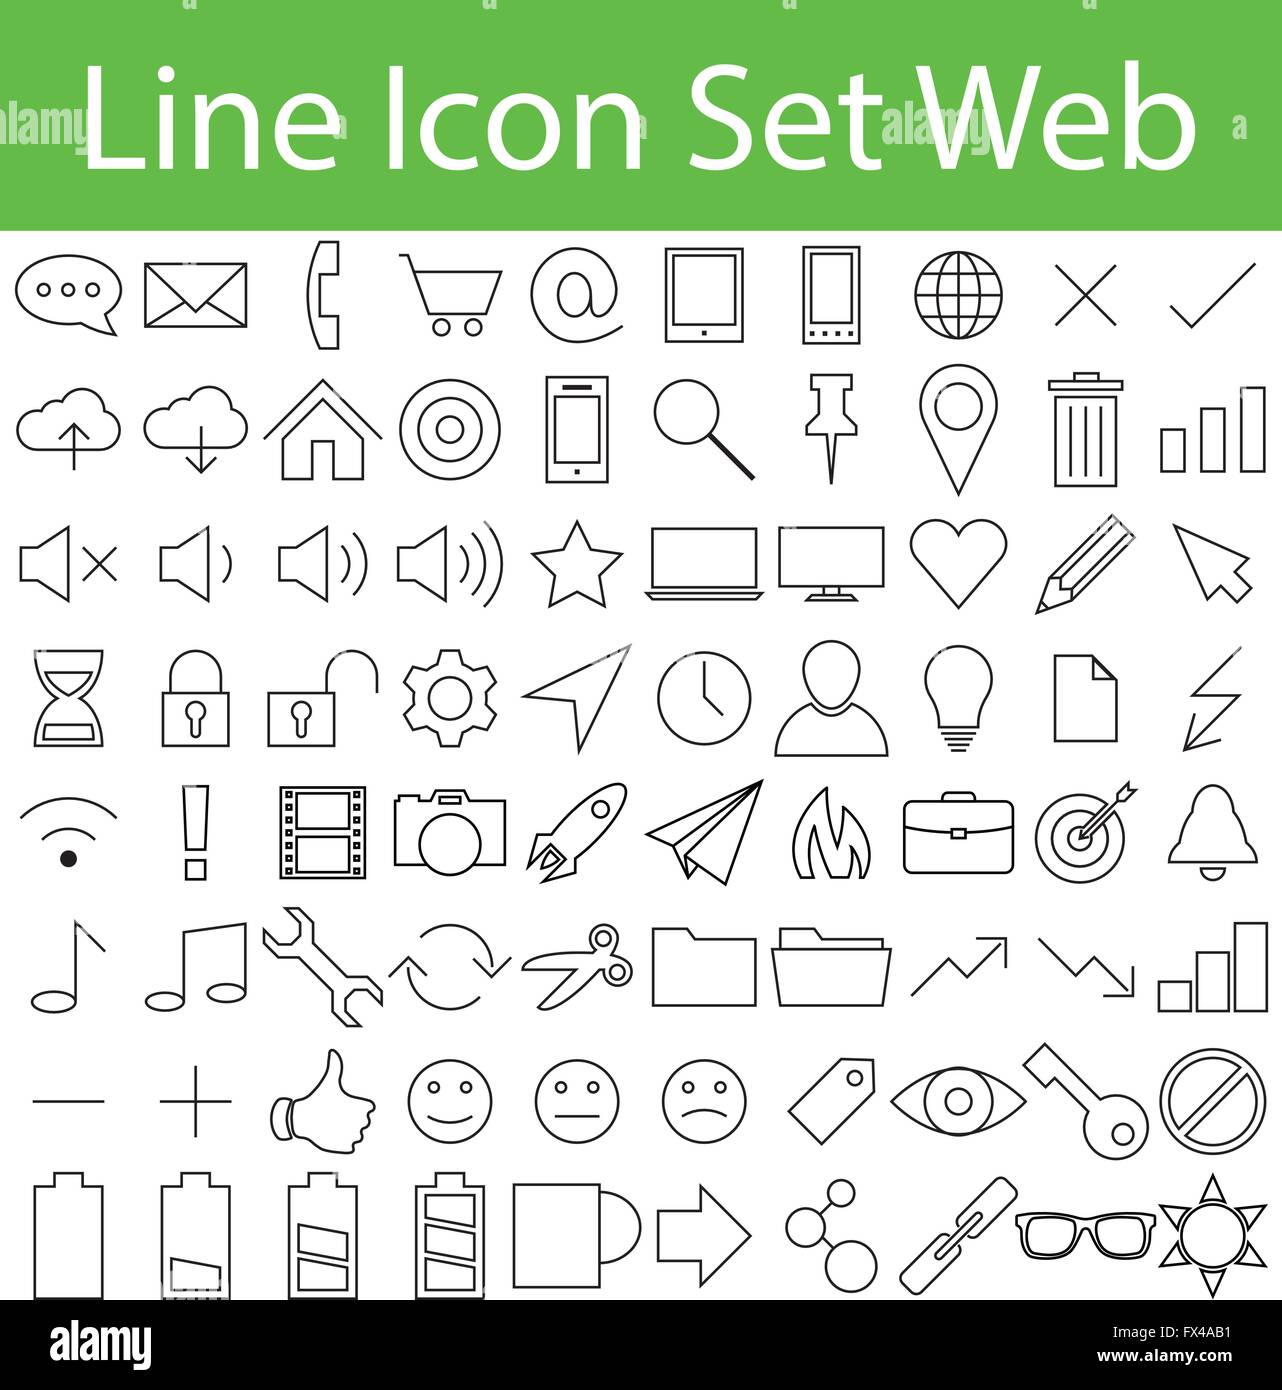 L'icône de la ligne Set Web avec 80 icônes pour l'utilisation créative en design graphique Illustration de Vecteur